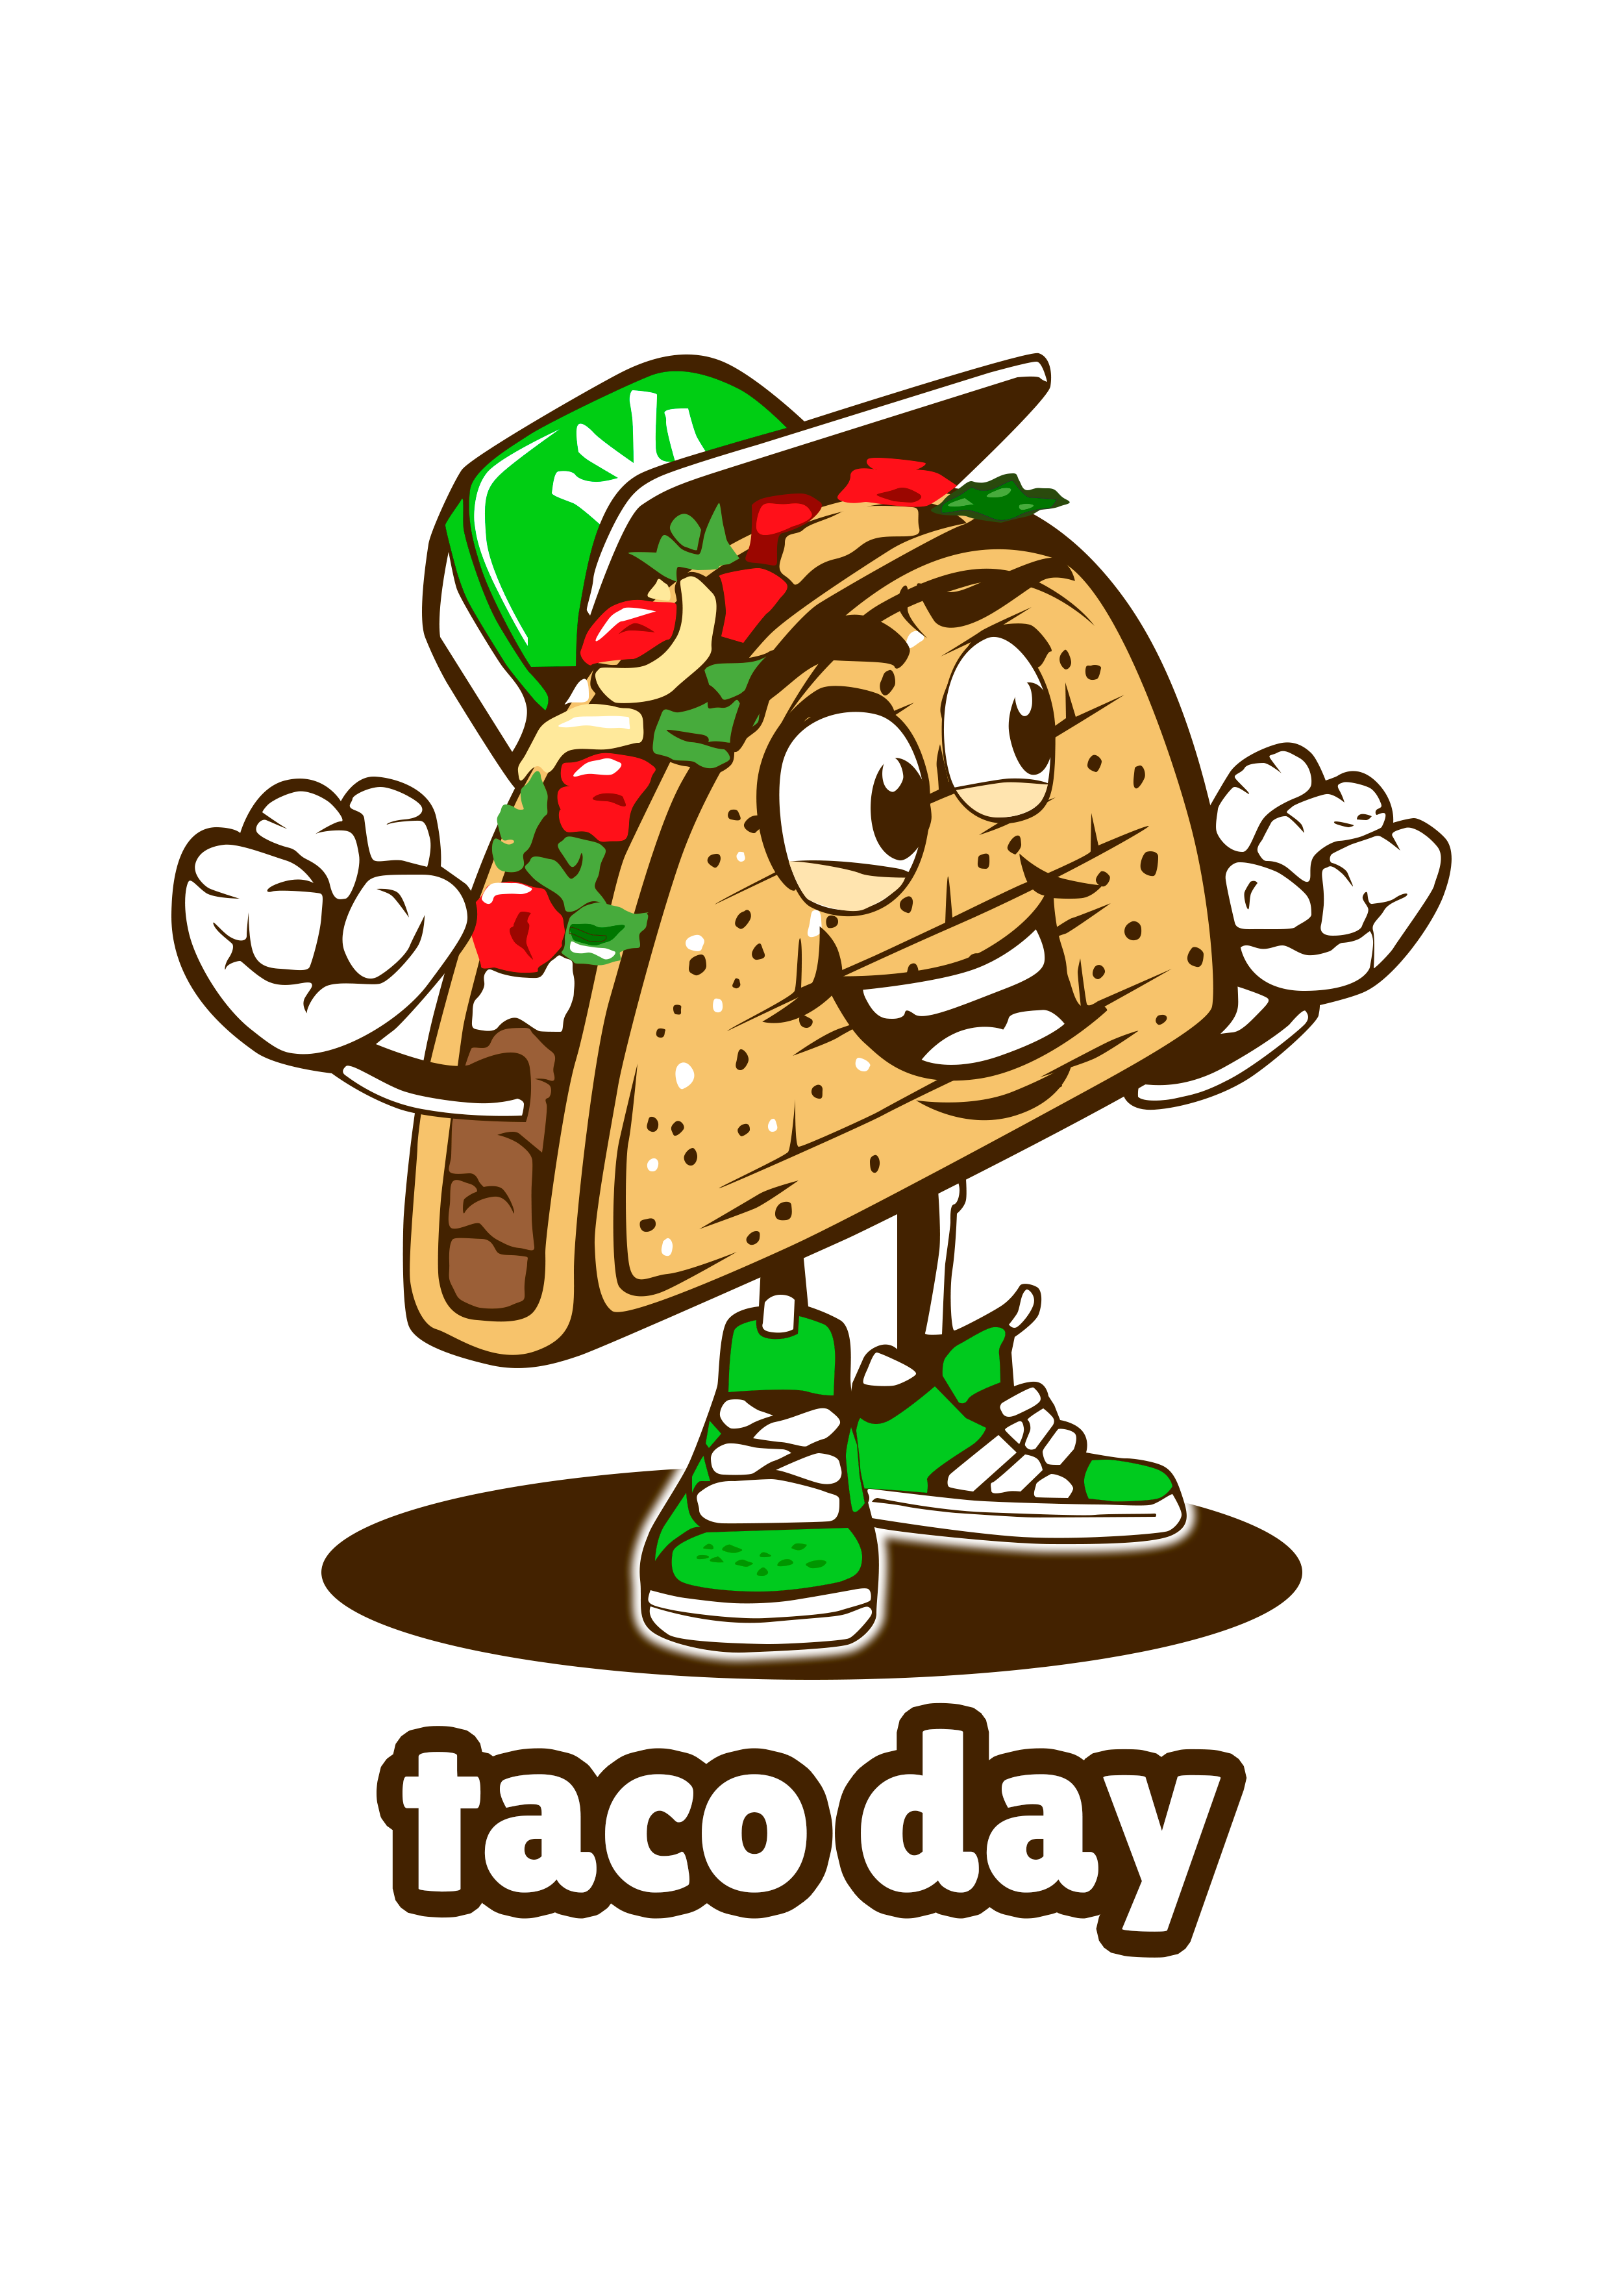 Taco day